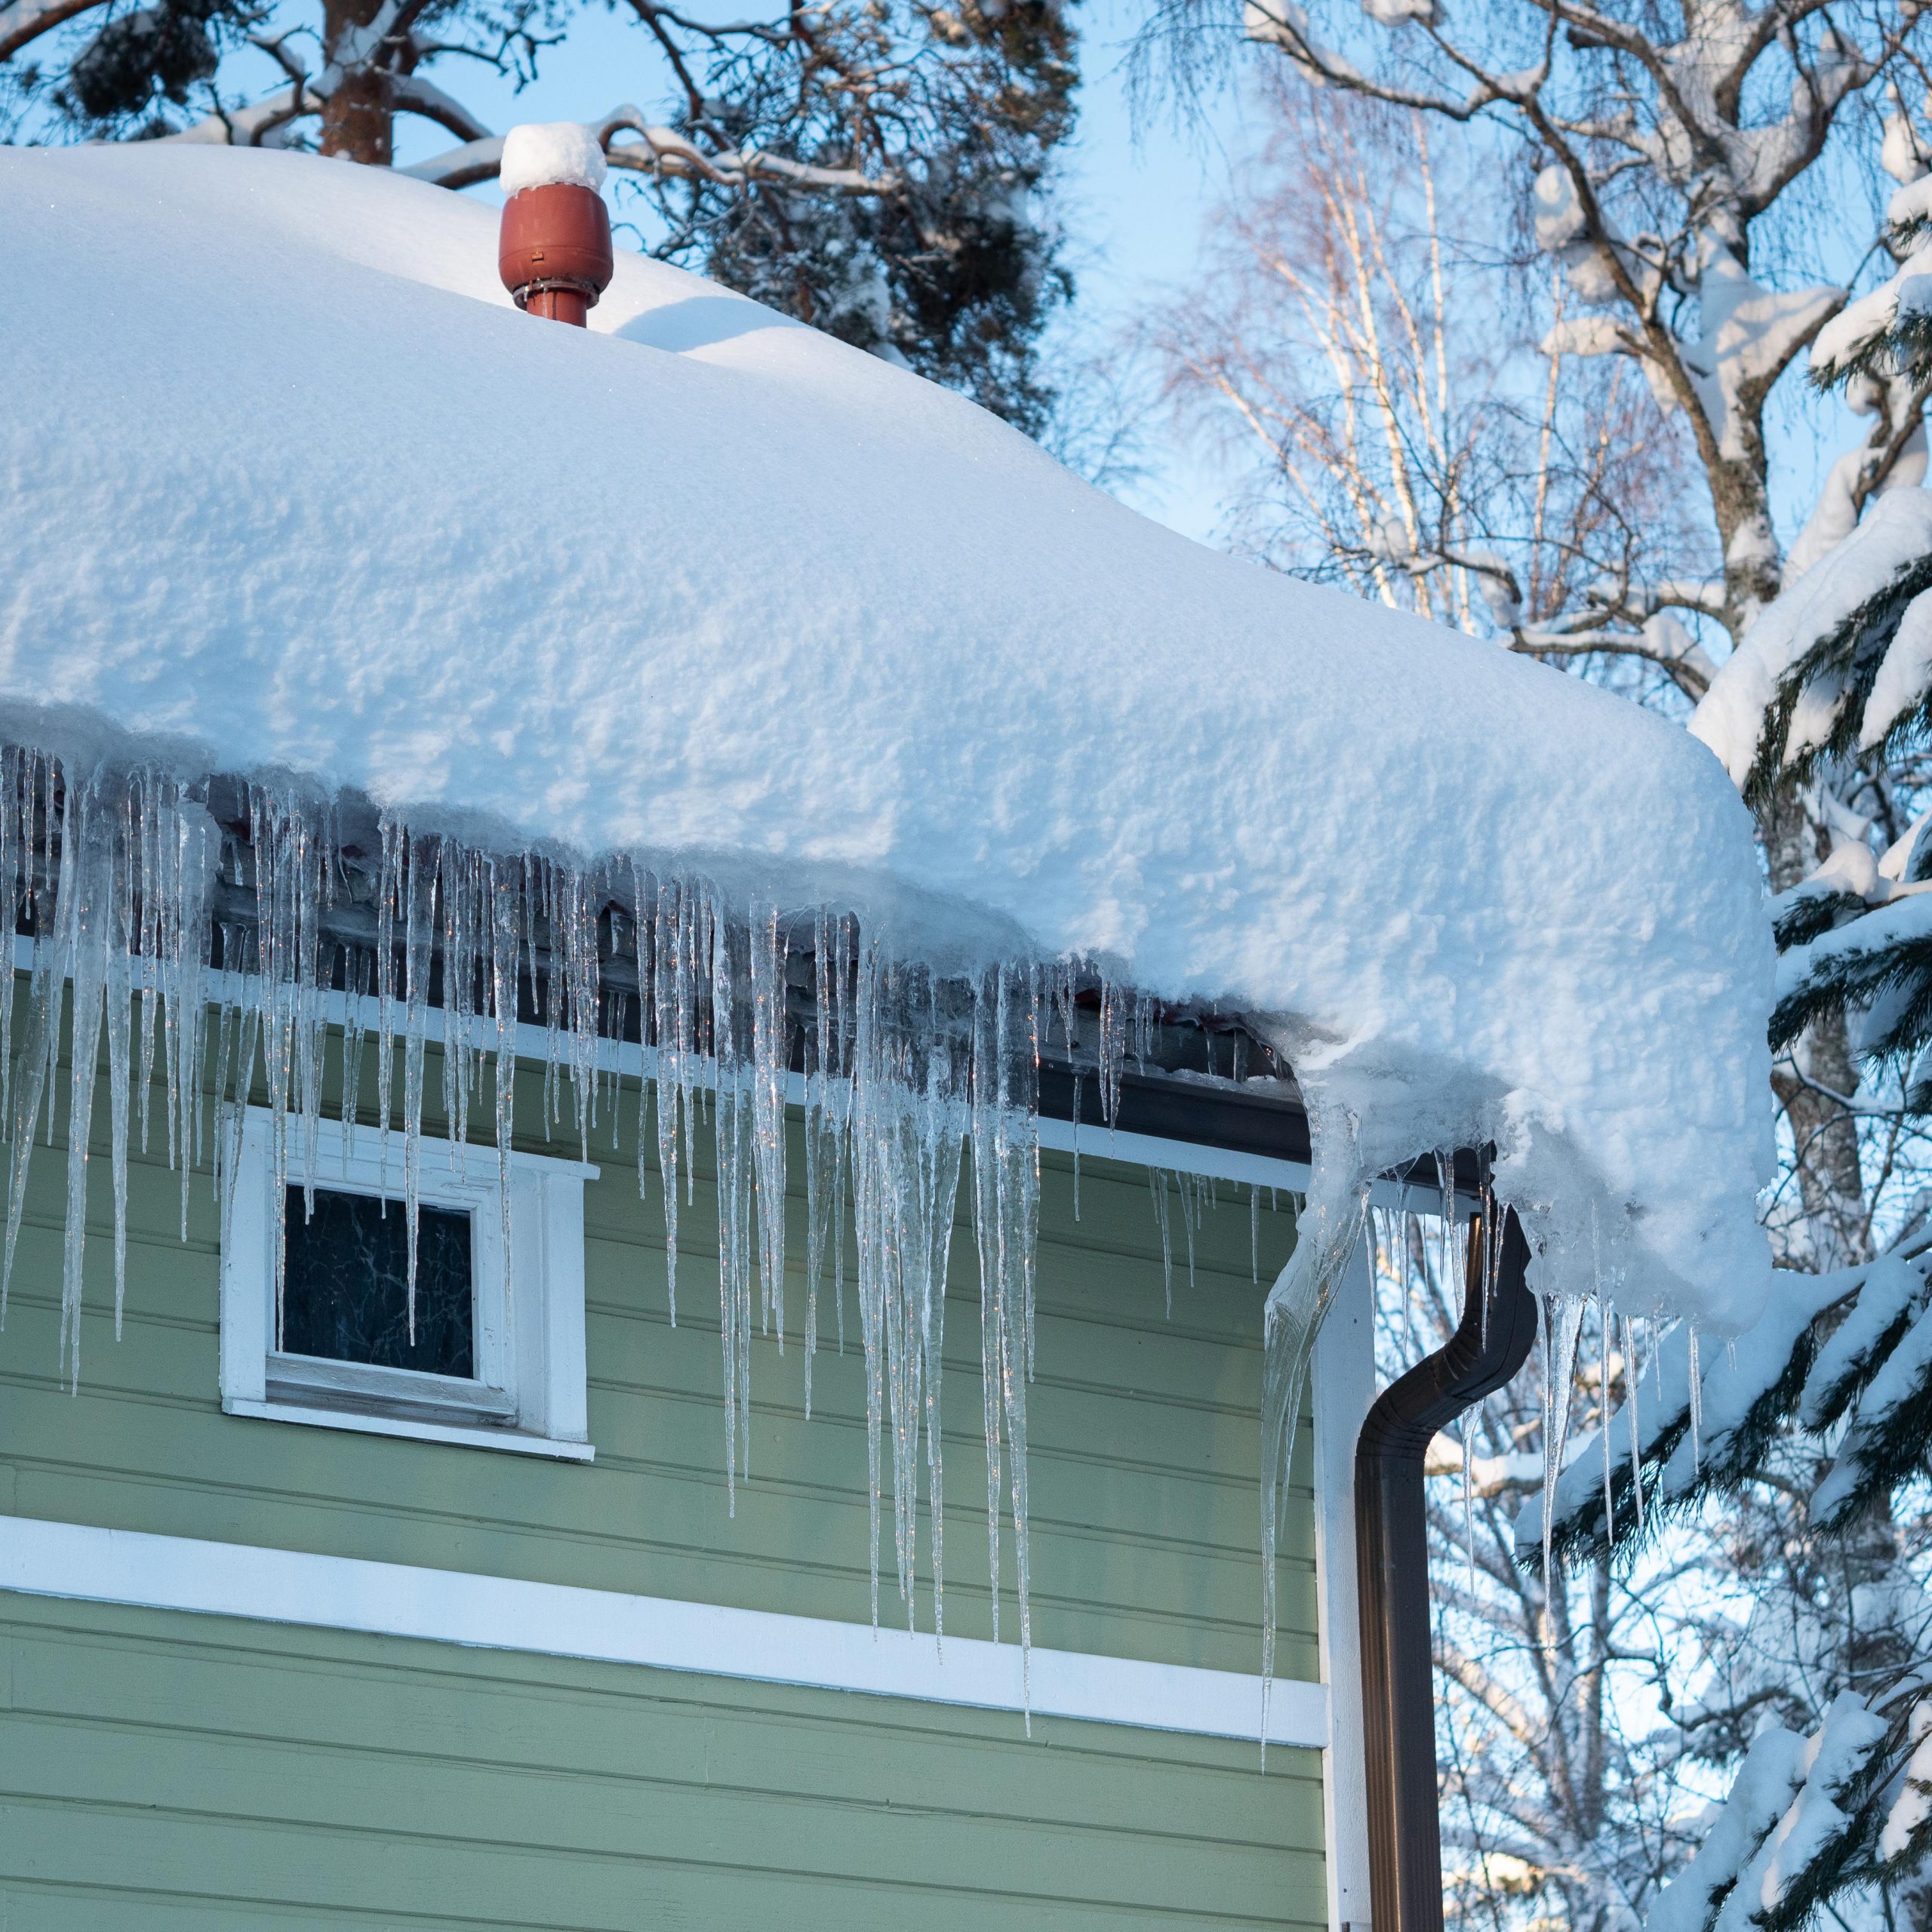 Jääpuikkoja roikkumassa vihreän puutalon katon reunalla.